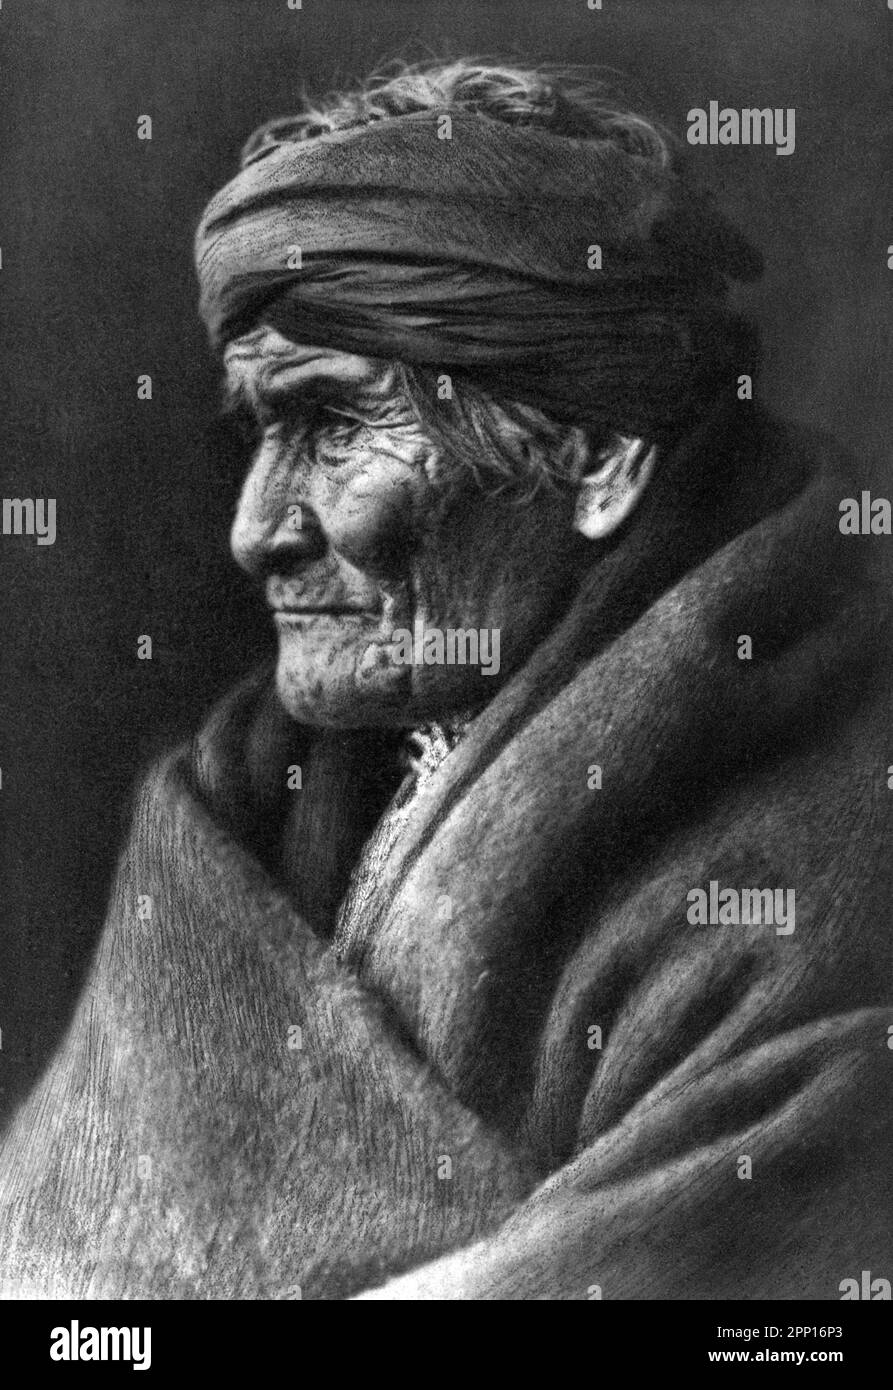 Ritratto del leader Apache e dell'uomo della medicina, Geronimo (1829-1909) di Edward Sheriff Curtis, 1907 Foto Stock